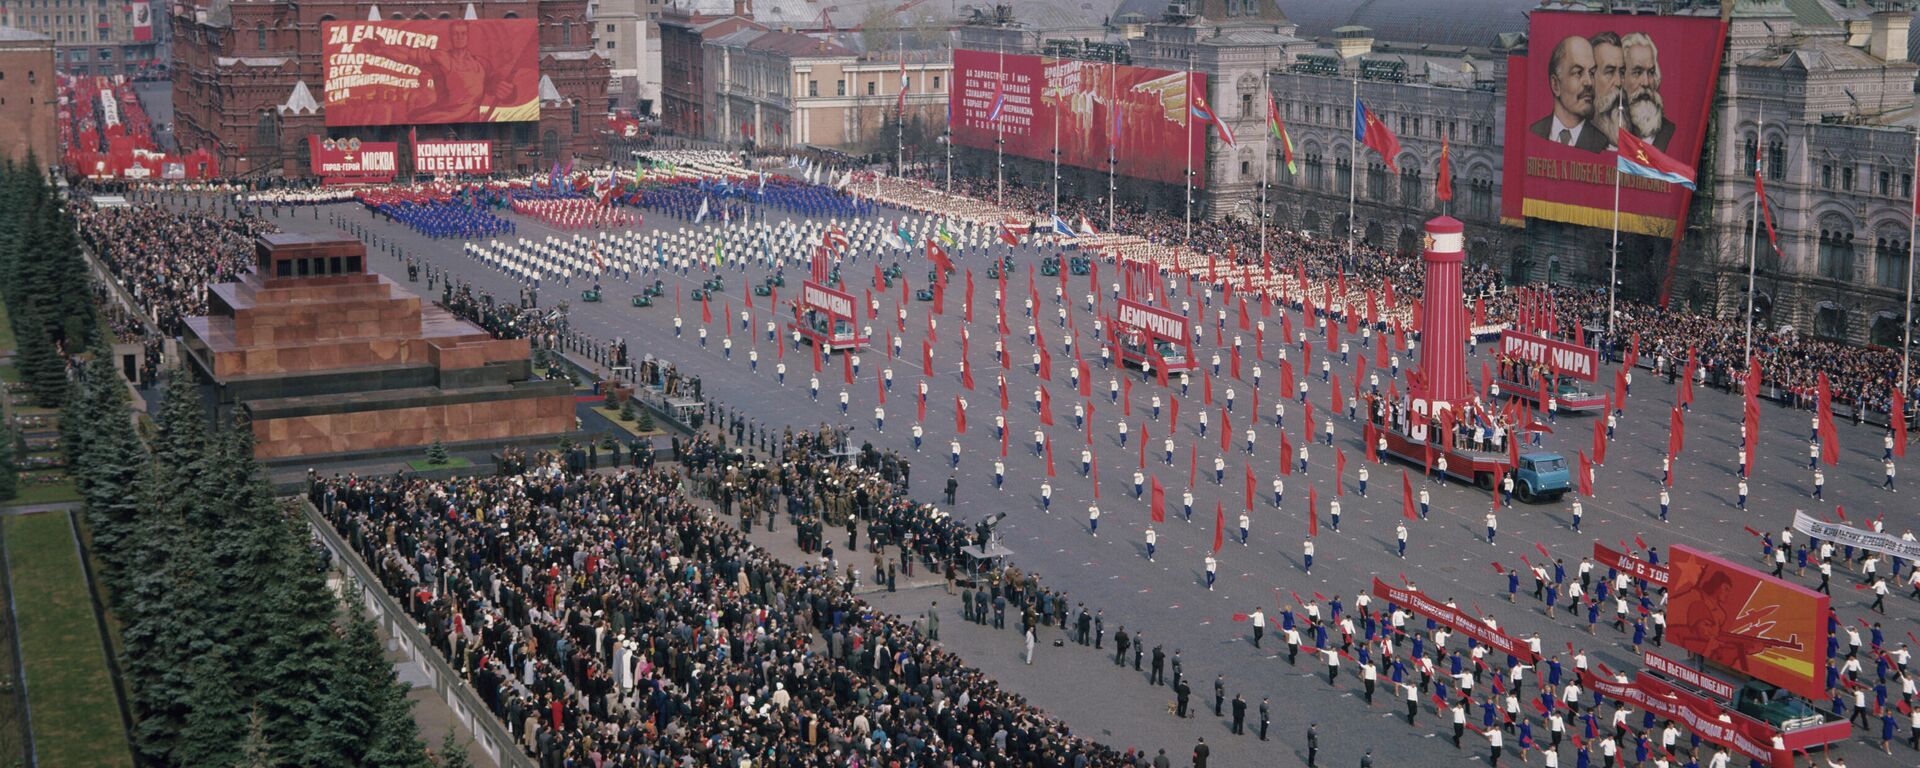 Физкультурный парад на Красной площади в День международной солидарности трудящихся. - Sputnik Абхазия, 1920, 08.12.2021